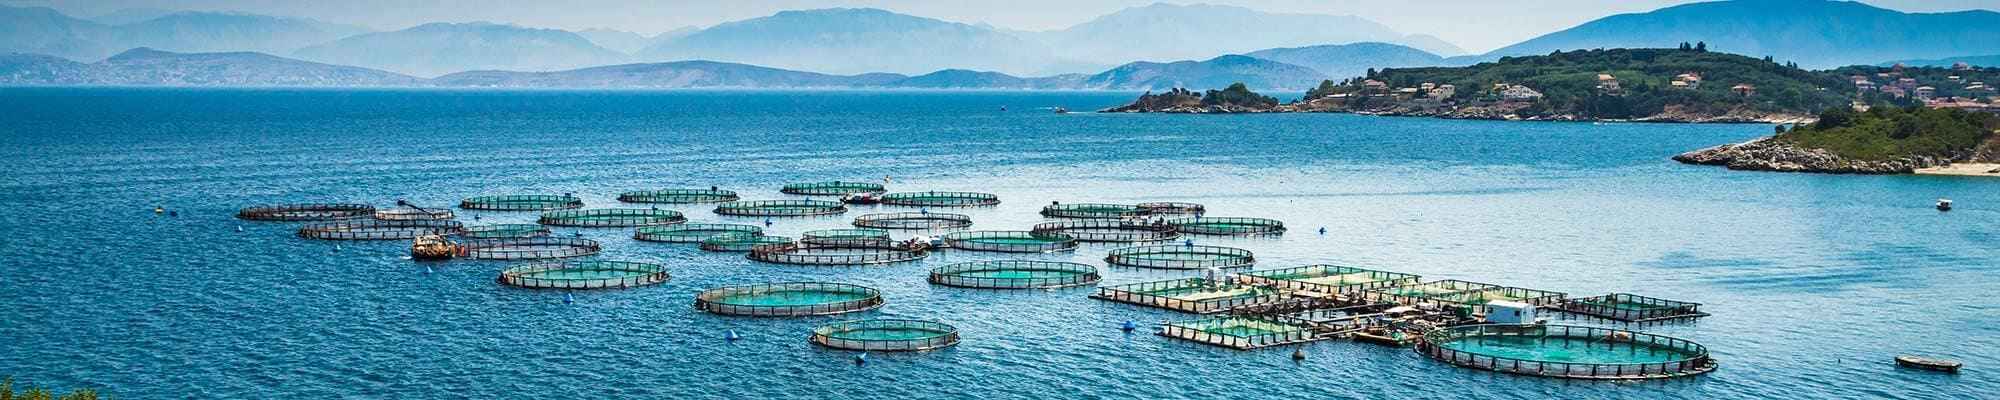 Aquakultur und Fischerei